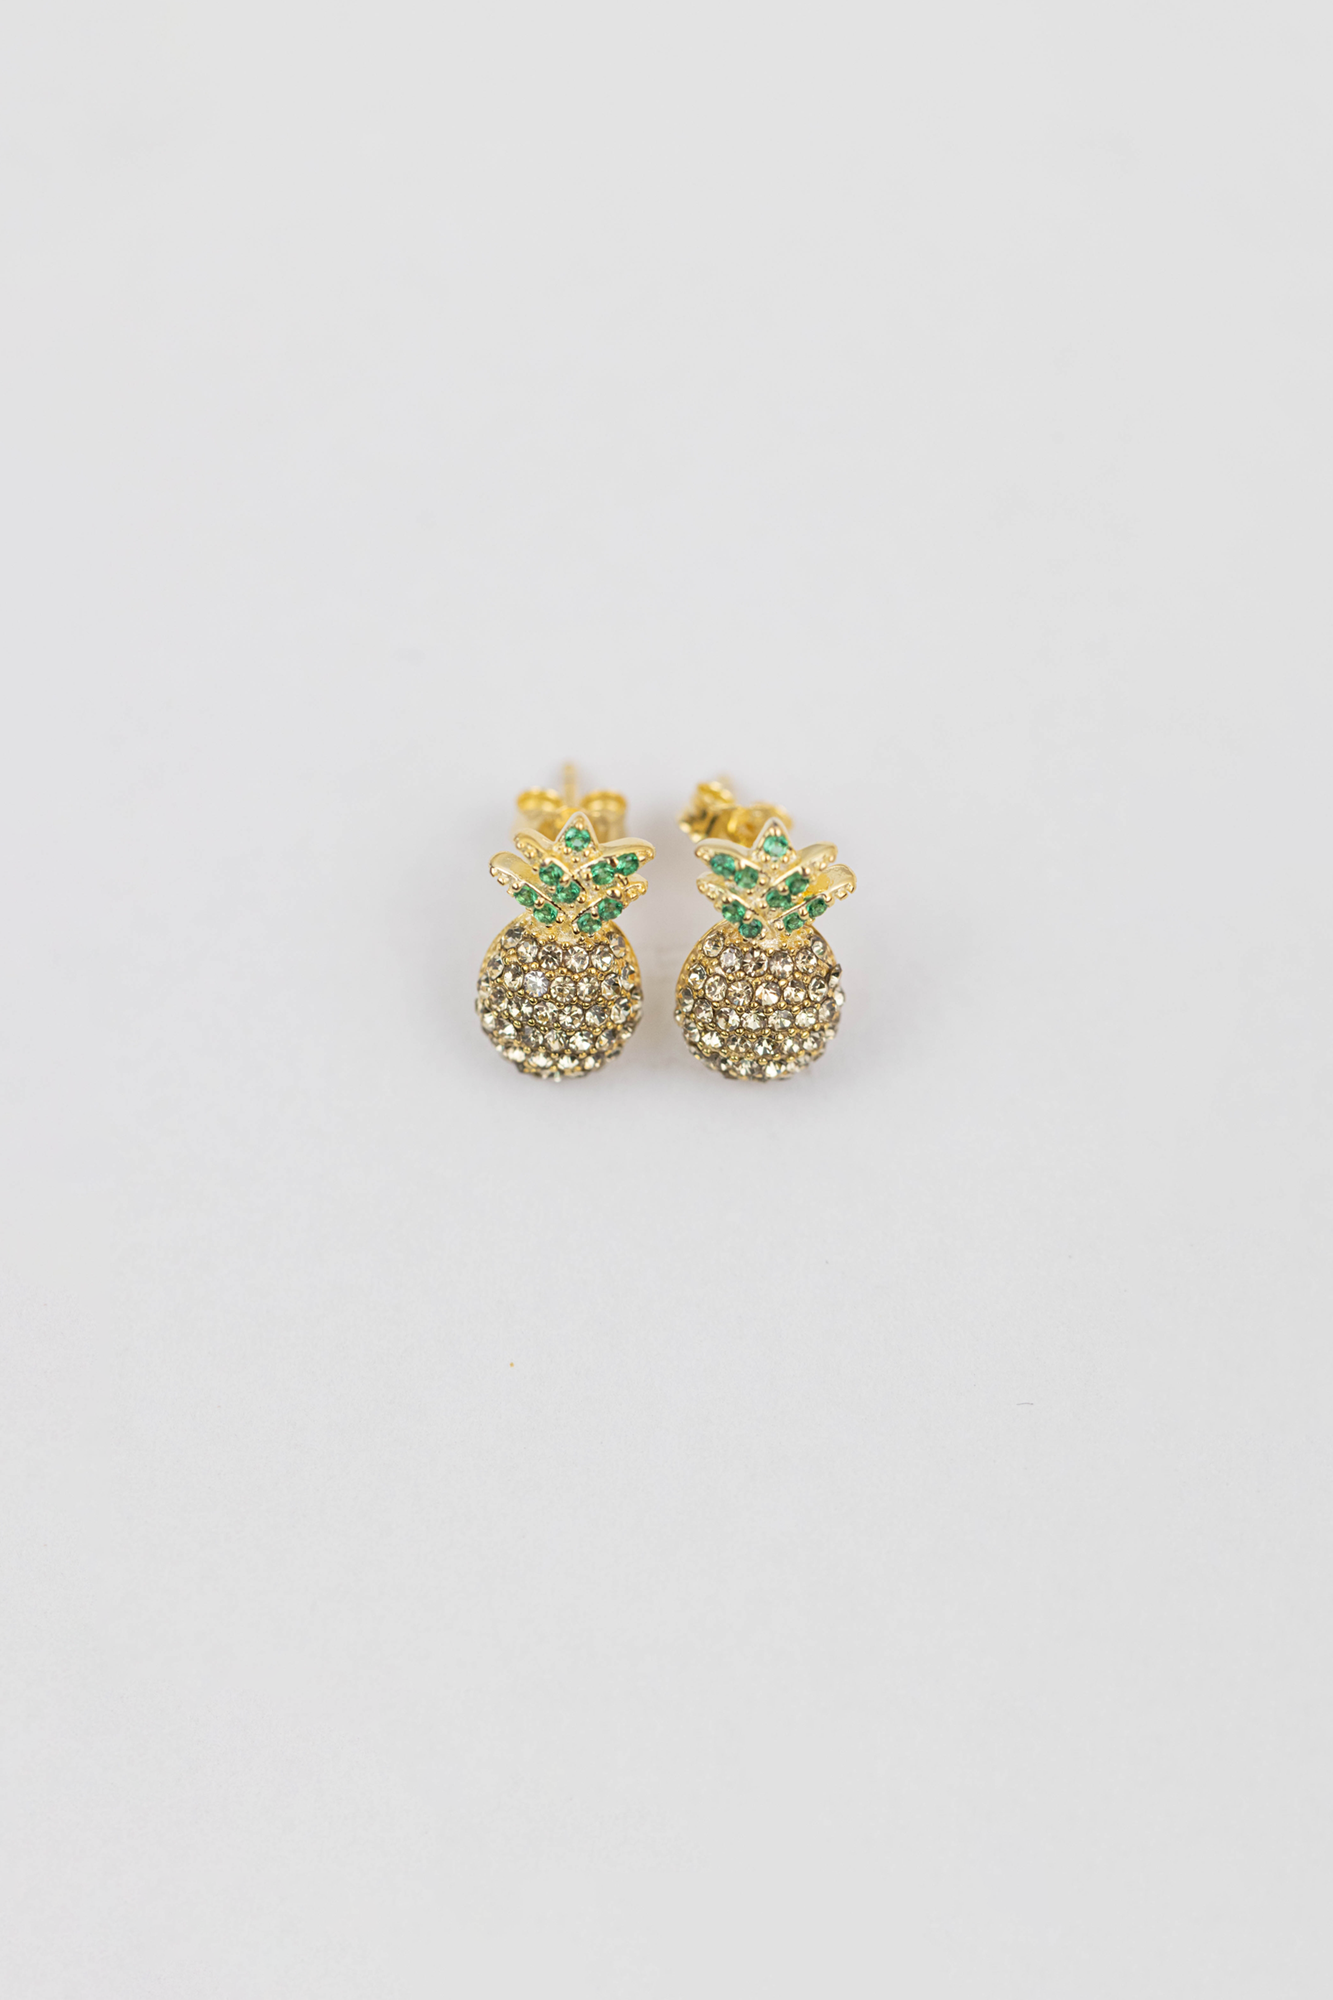 Pineapple Crystal Sterling Silver Earrings